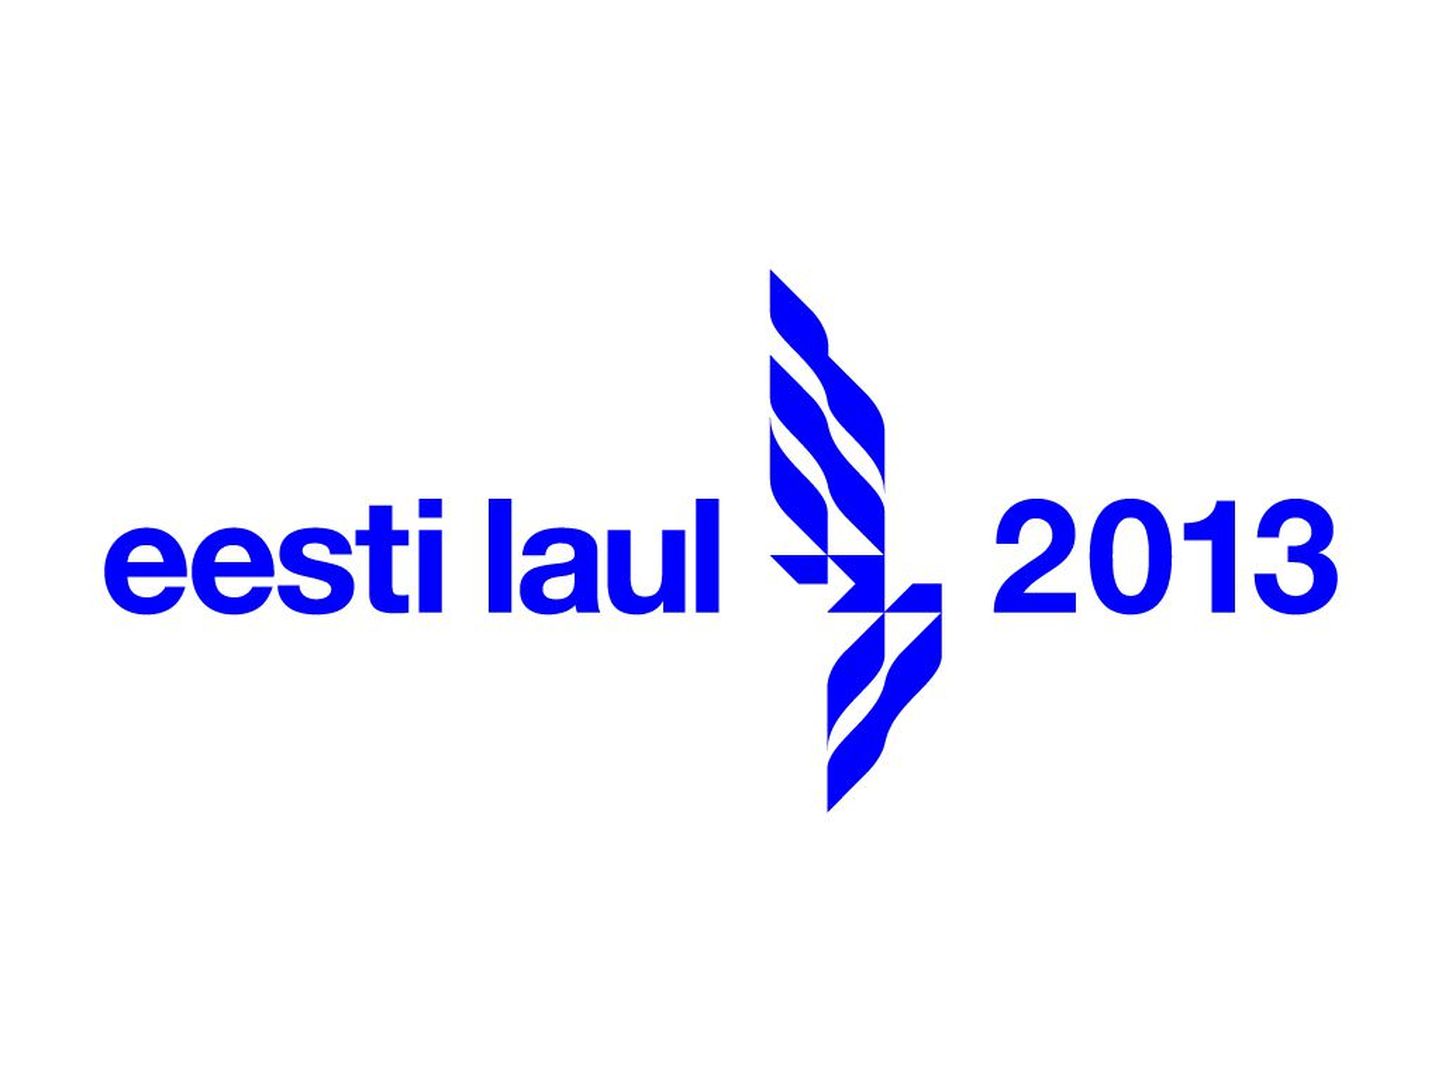 Eesti Laul 2013 logo.